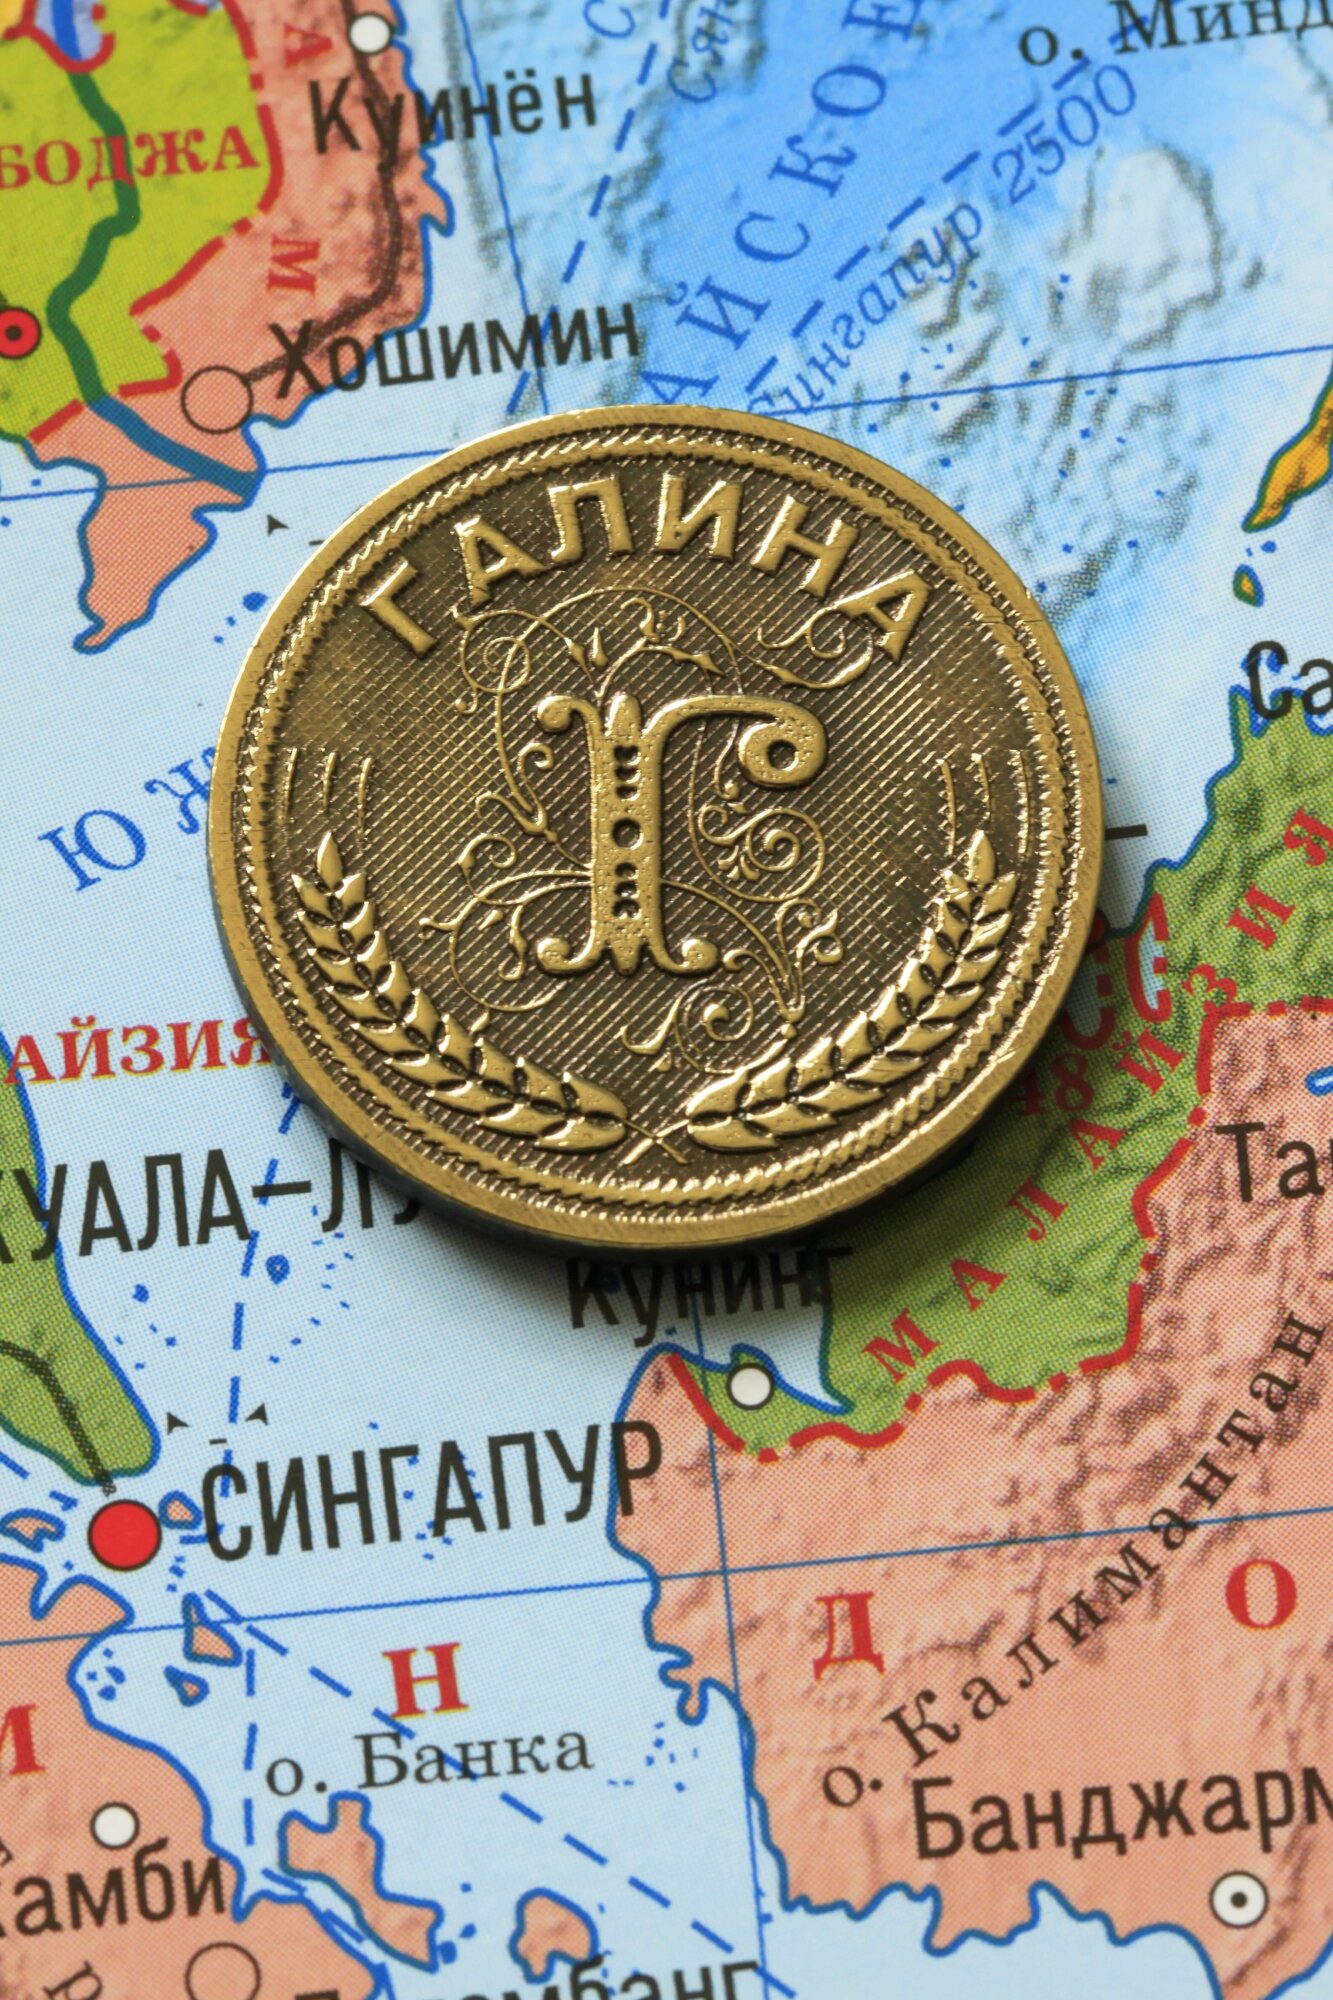 Именная оригинальна сувенирная монетка в подарок на богатство и удачу для женщины, девушки и девочки - Галина